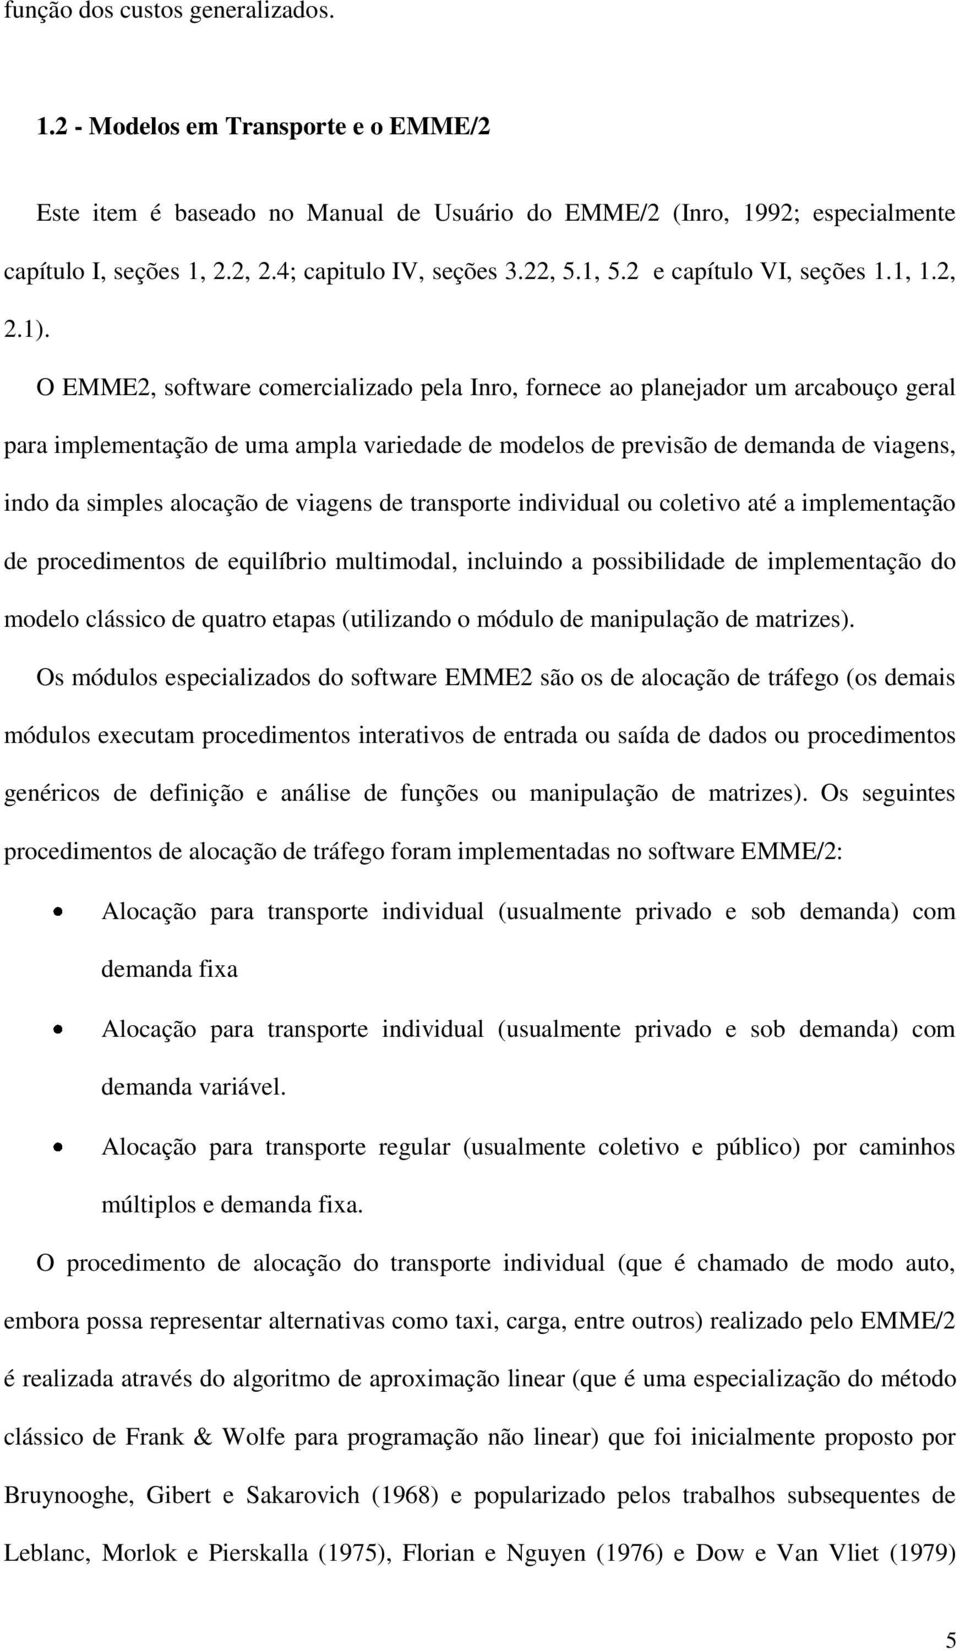 O EMME2, software comercializado pela Inro, fornece ao planejador um arcabouço geral para implementação de uma ampla variedade de modelos de previsão de demanda de viagens, indo da simples alocação